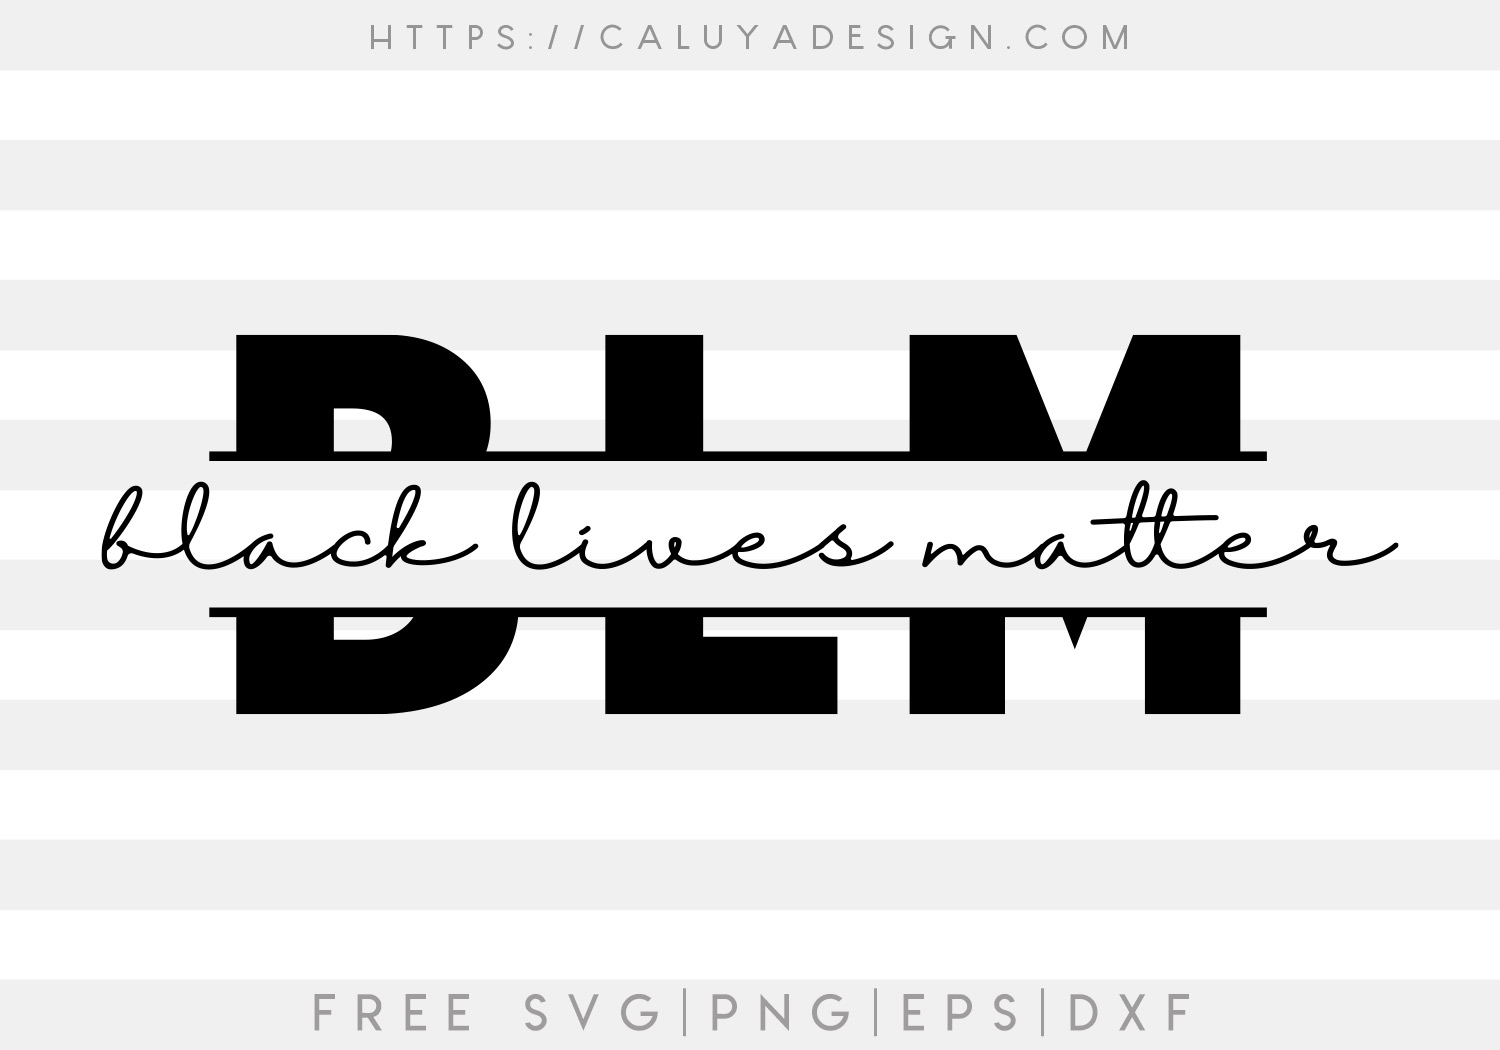 Black Lives Matter SVG, PNG, EPS & DXF